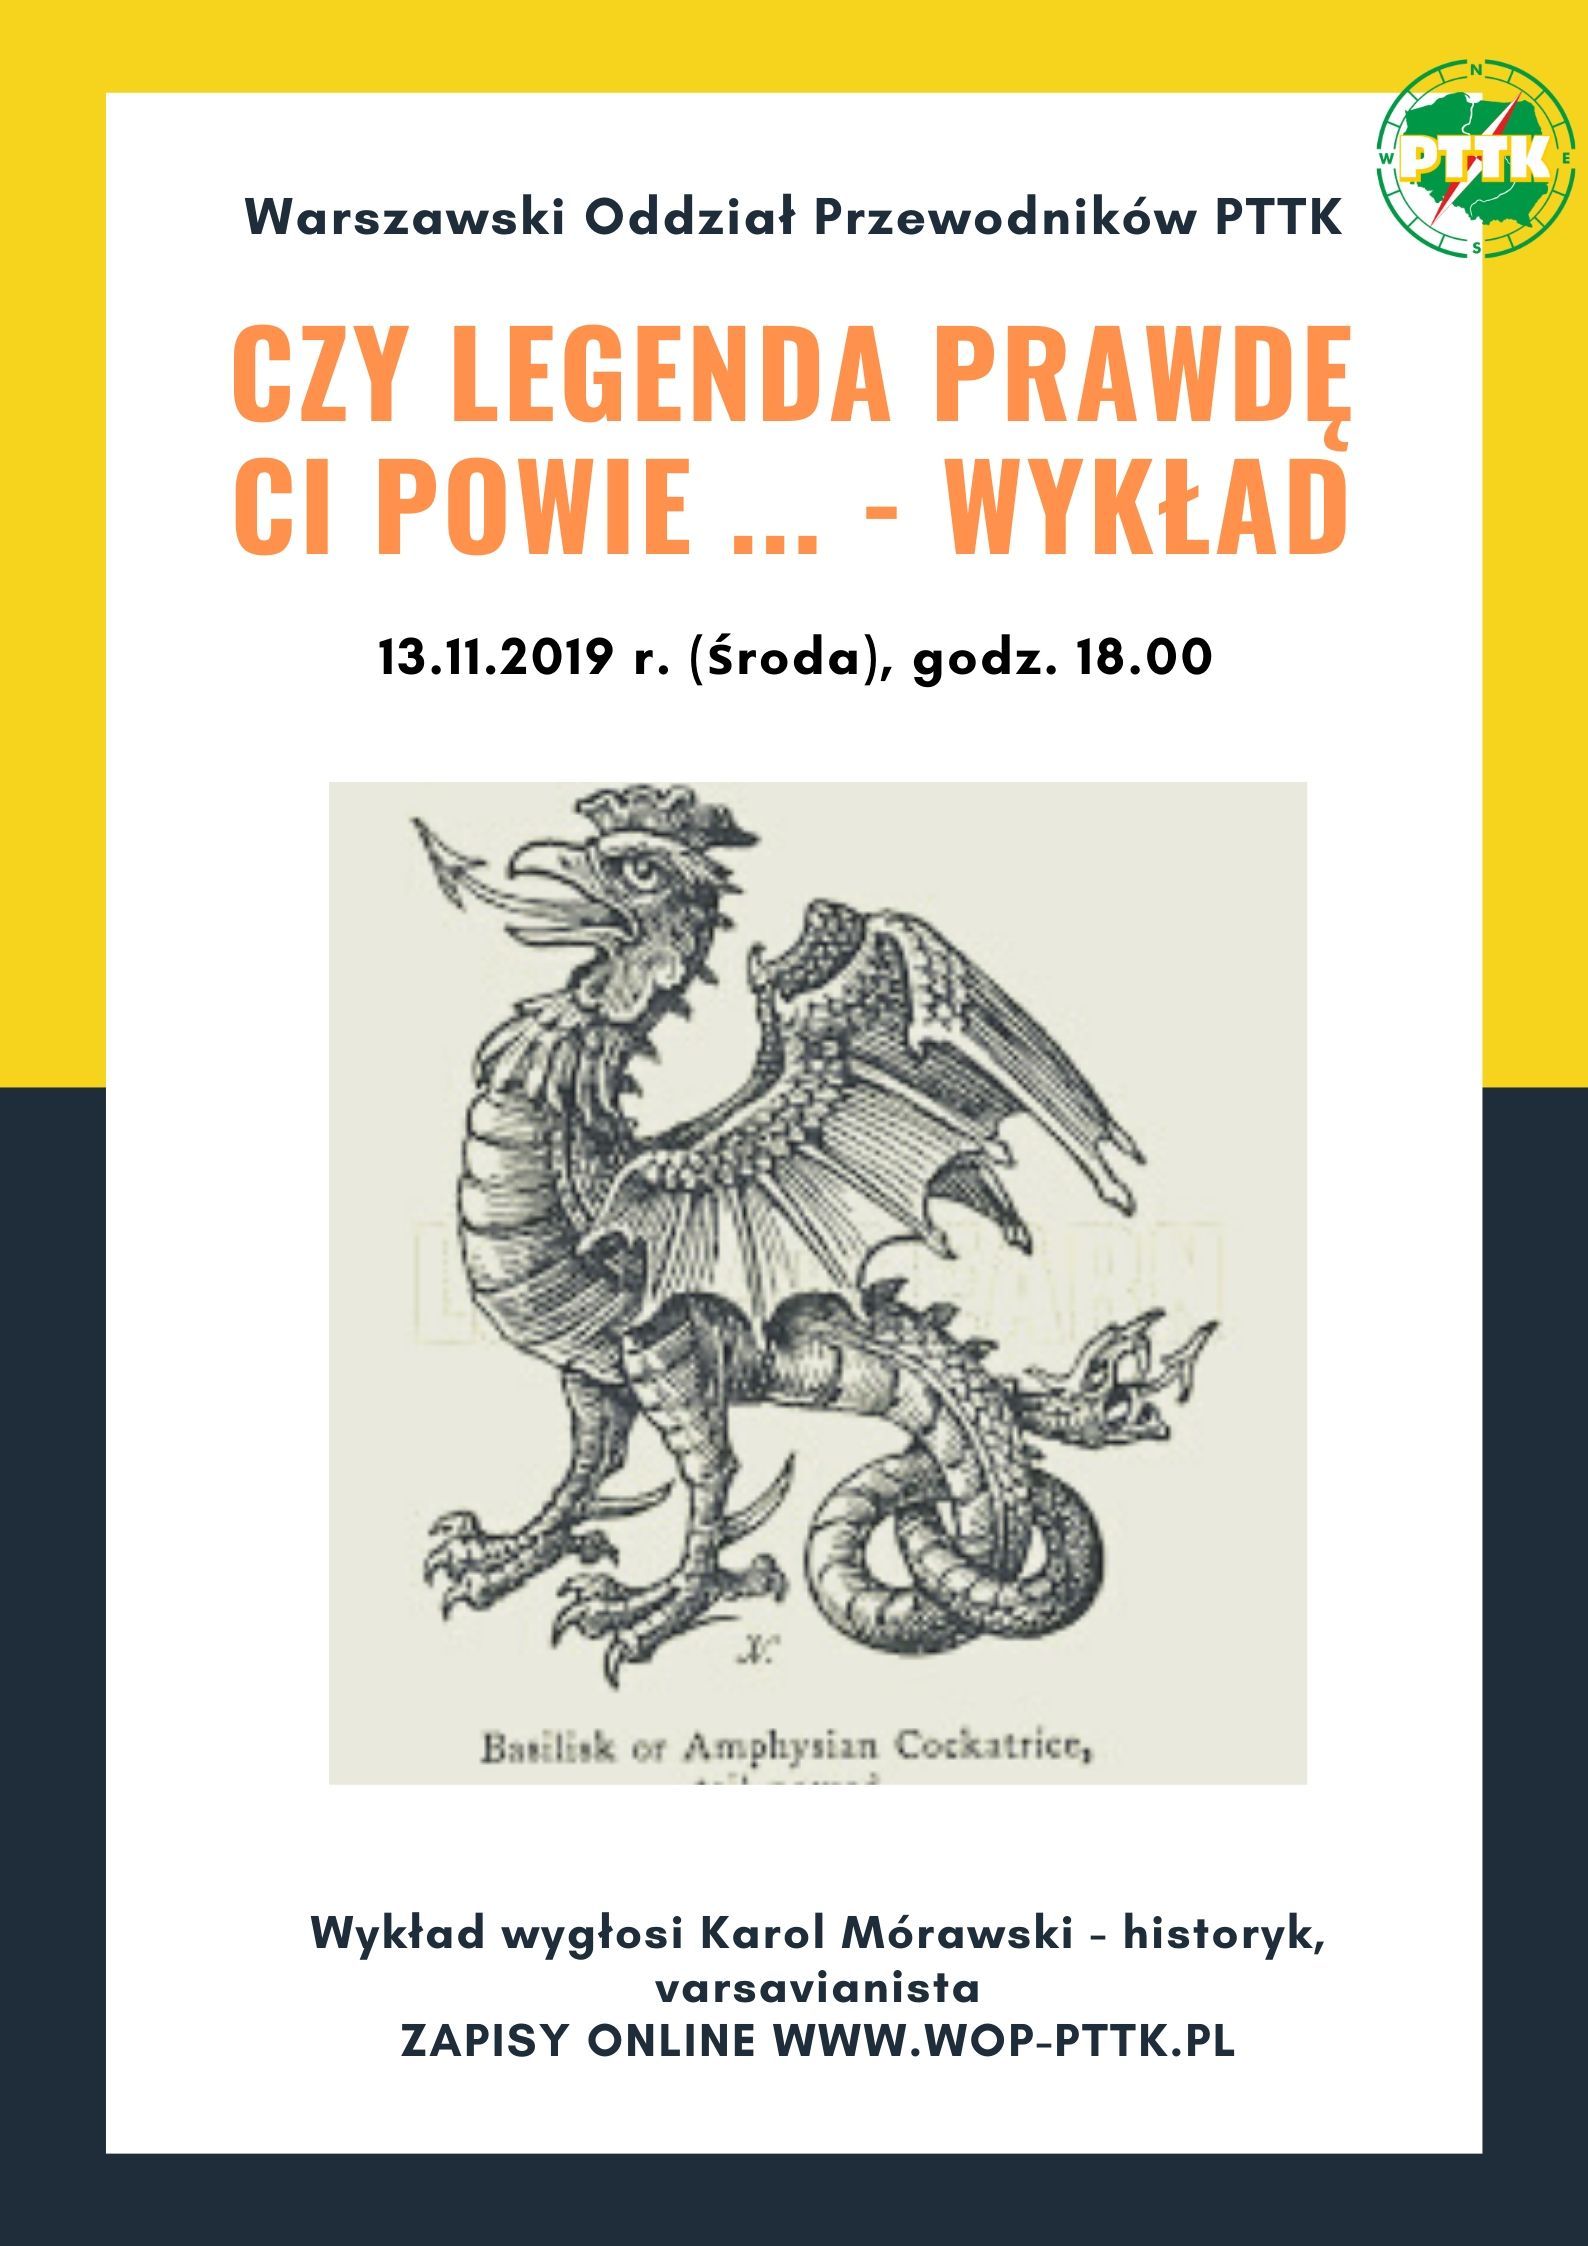 13.11.2019 r. (środa) Czy legenda prawdę Ci powie .... - wykład varsavianistyczny